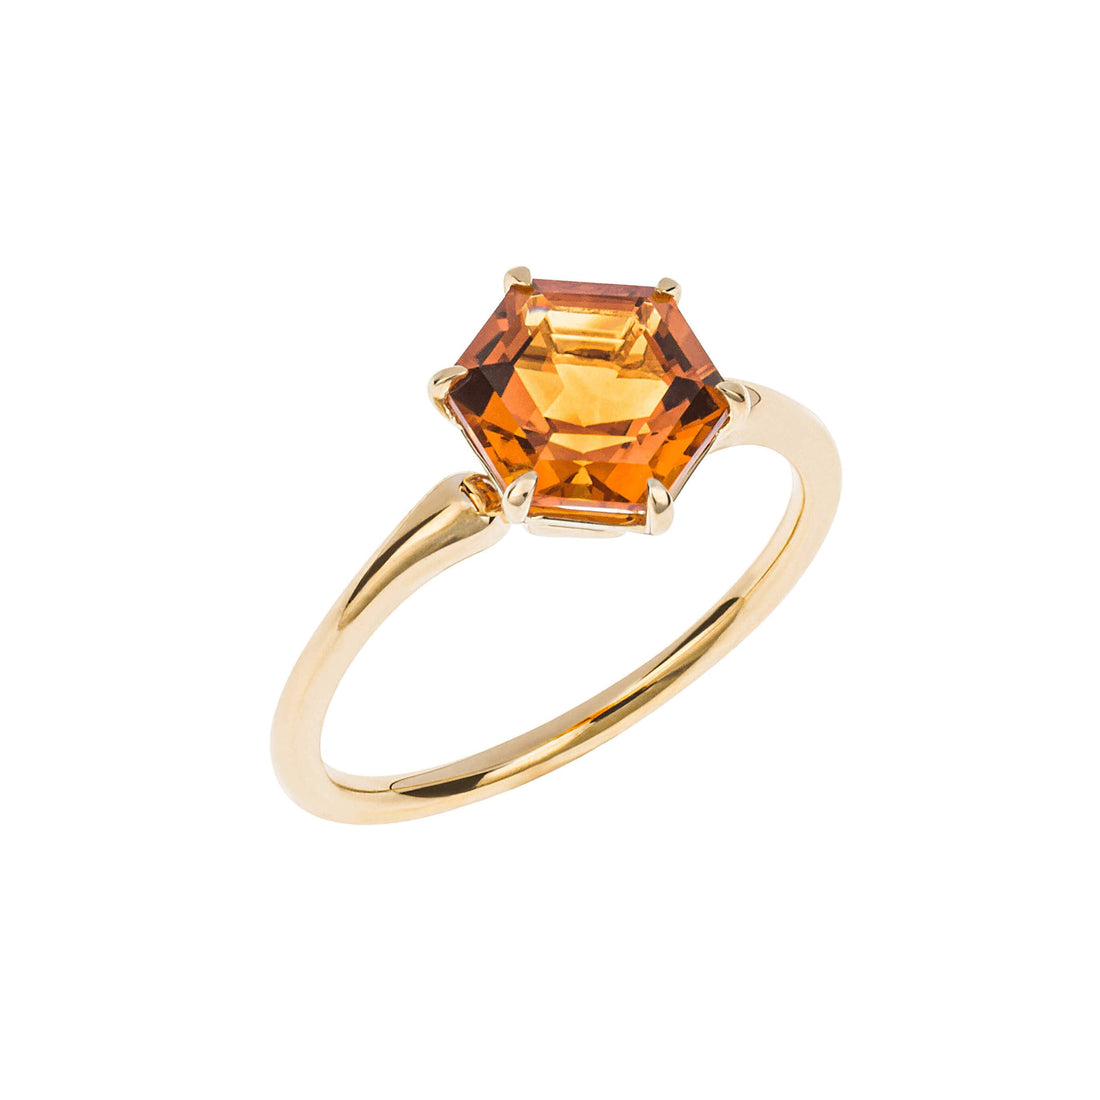 Hexagonal Citrine Ring in 9ct Yellow Gold - Robert Anthony Jewellers, Edinburgh